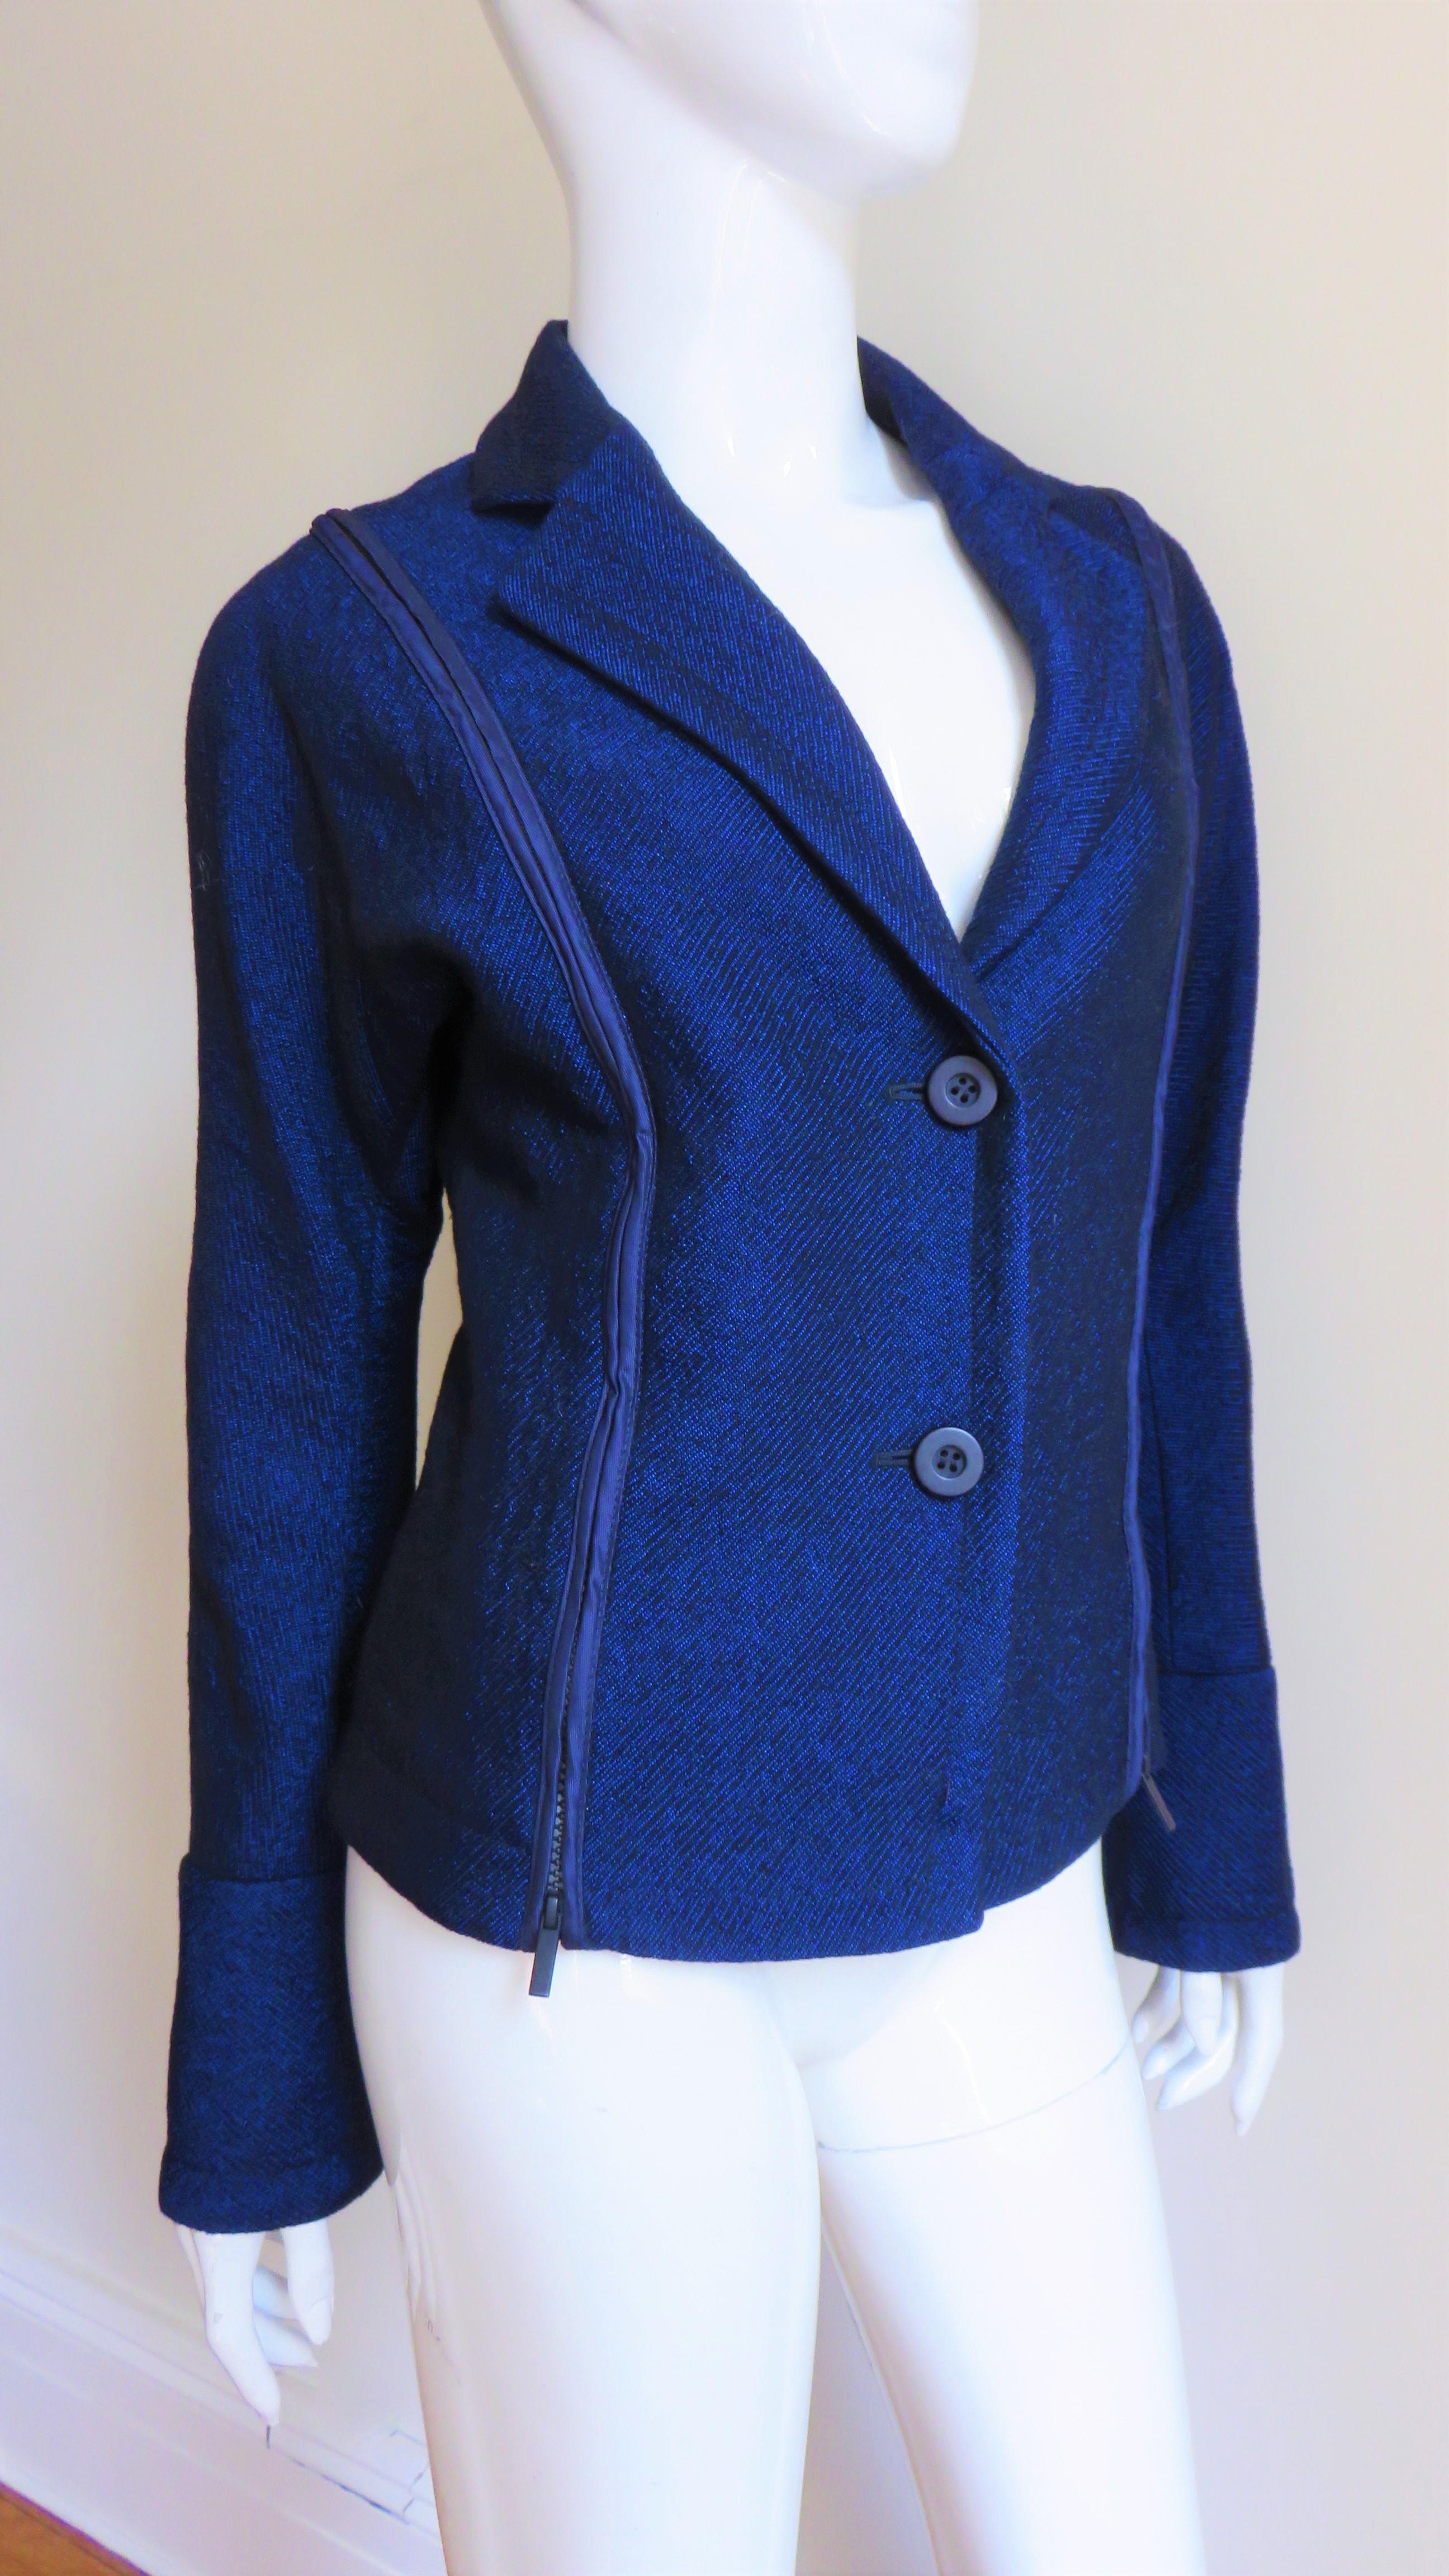 Une fabuleuse veste en laine bleu vif signée Issey Miyake. Il est doté d'un col à revers, d'une fermeture boutonnée noire sur le devant, de longues manches dolman avec des poignets à fermeture éclair et de fabuleuses fermetures éclair verticales de